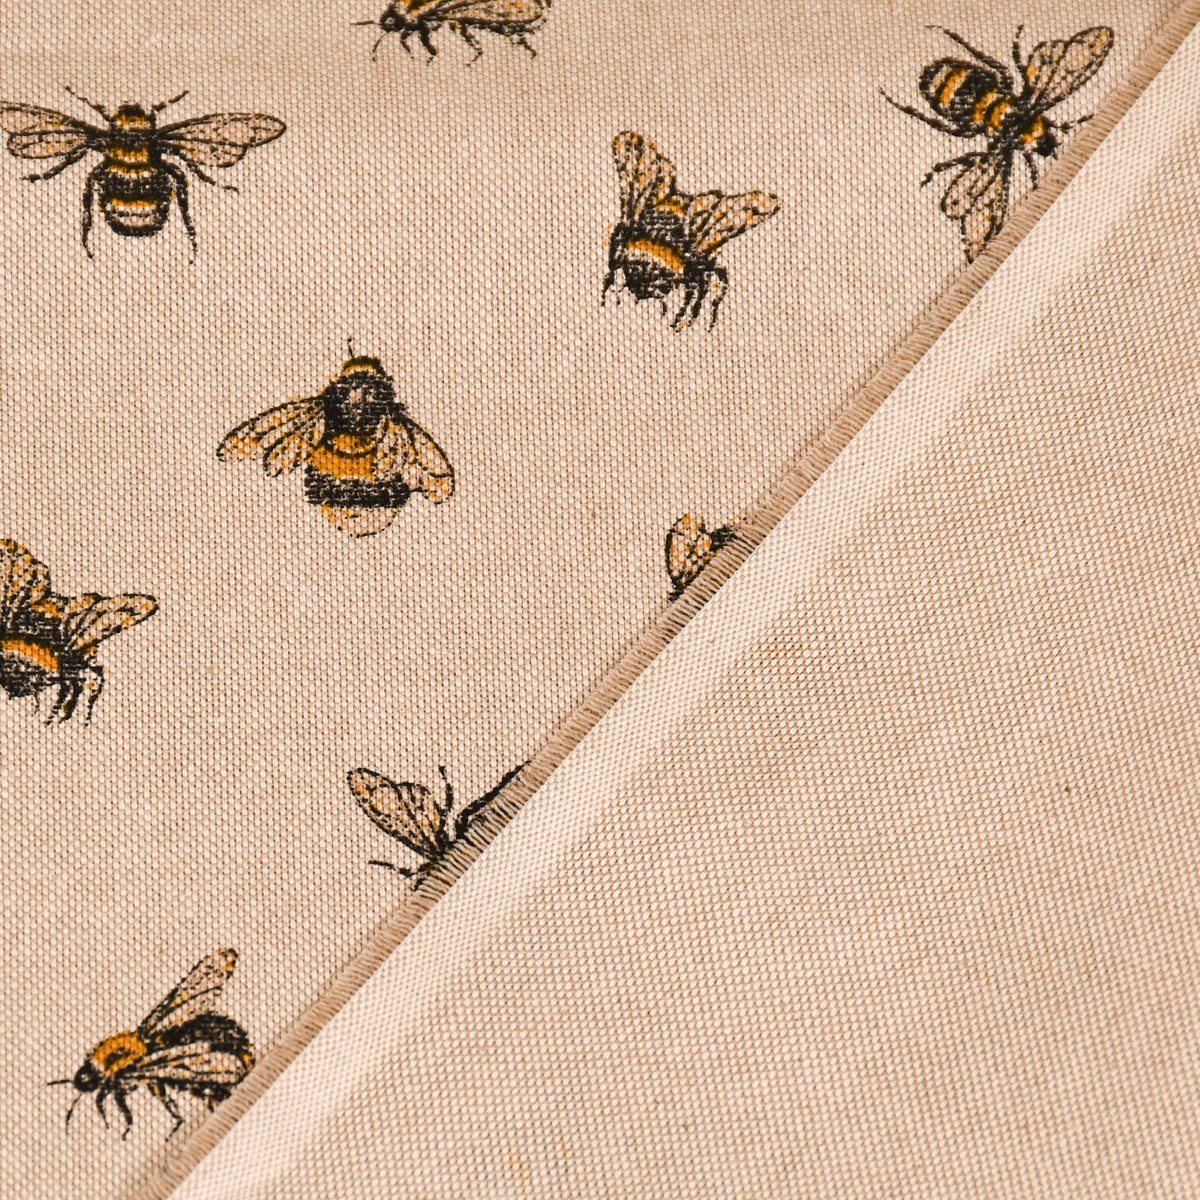 SCHÖNER LEBEN. Tischläufer Tischläufer Buzzing LEBEN. gelb, handmade SCHÖNER natur Bee Hummeln Bienen